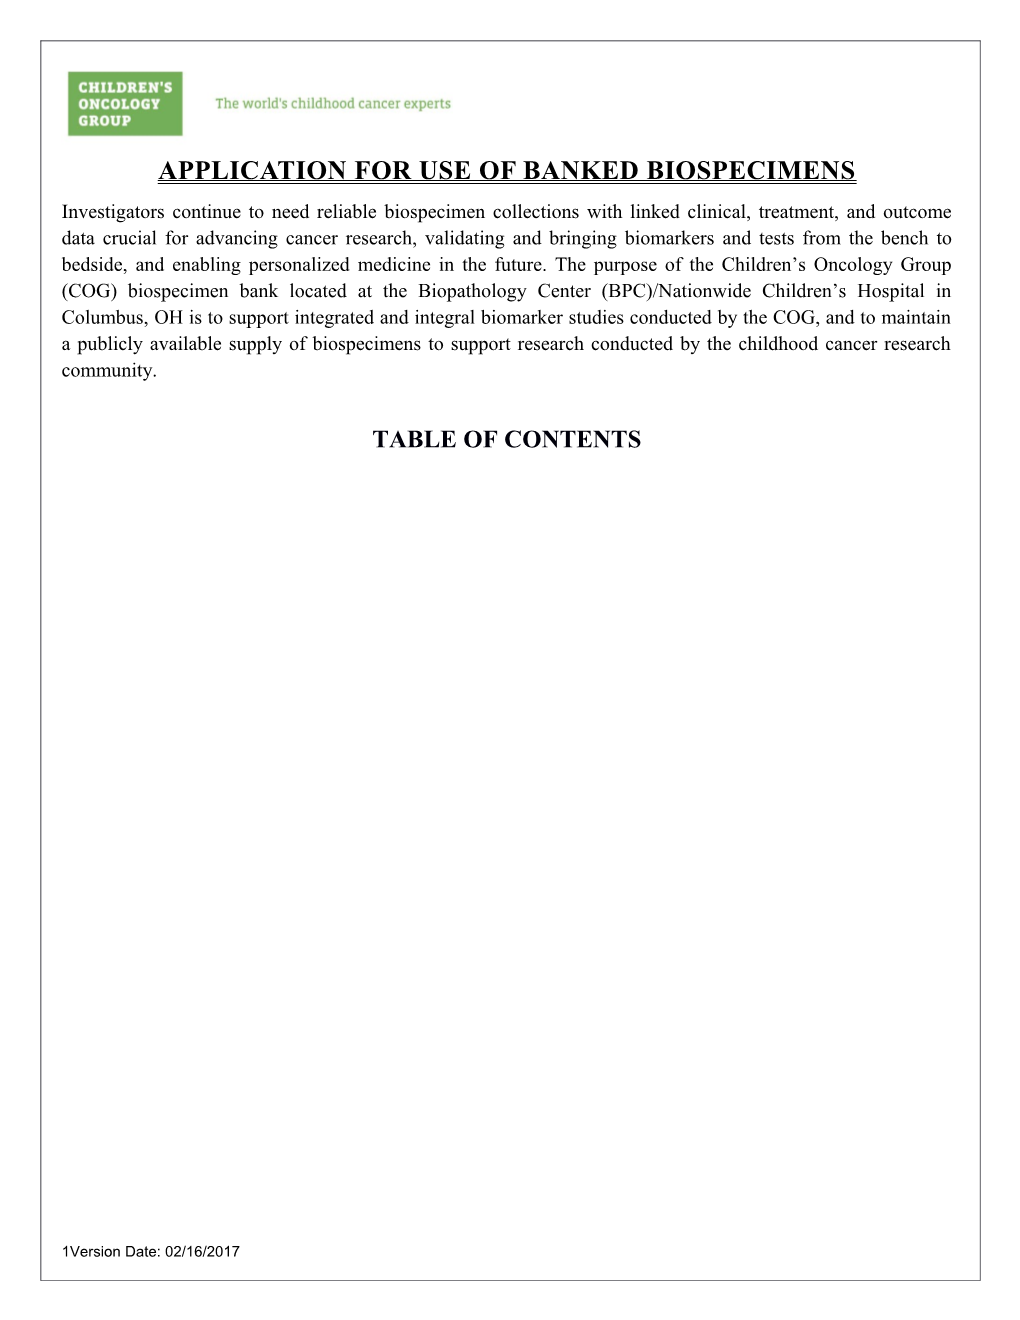 Application for Use of Banked Biospecimens